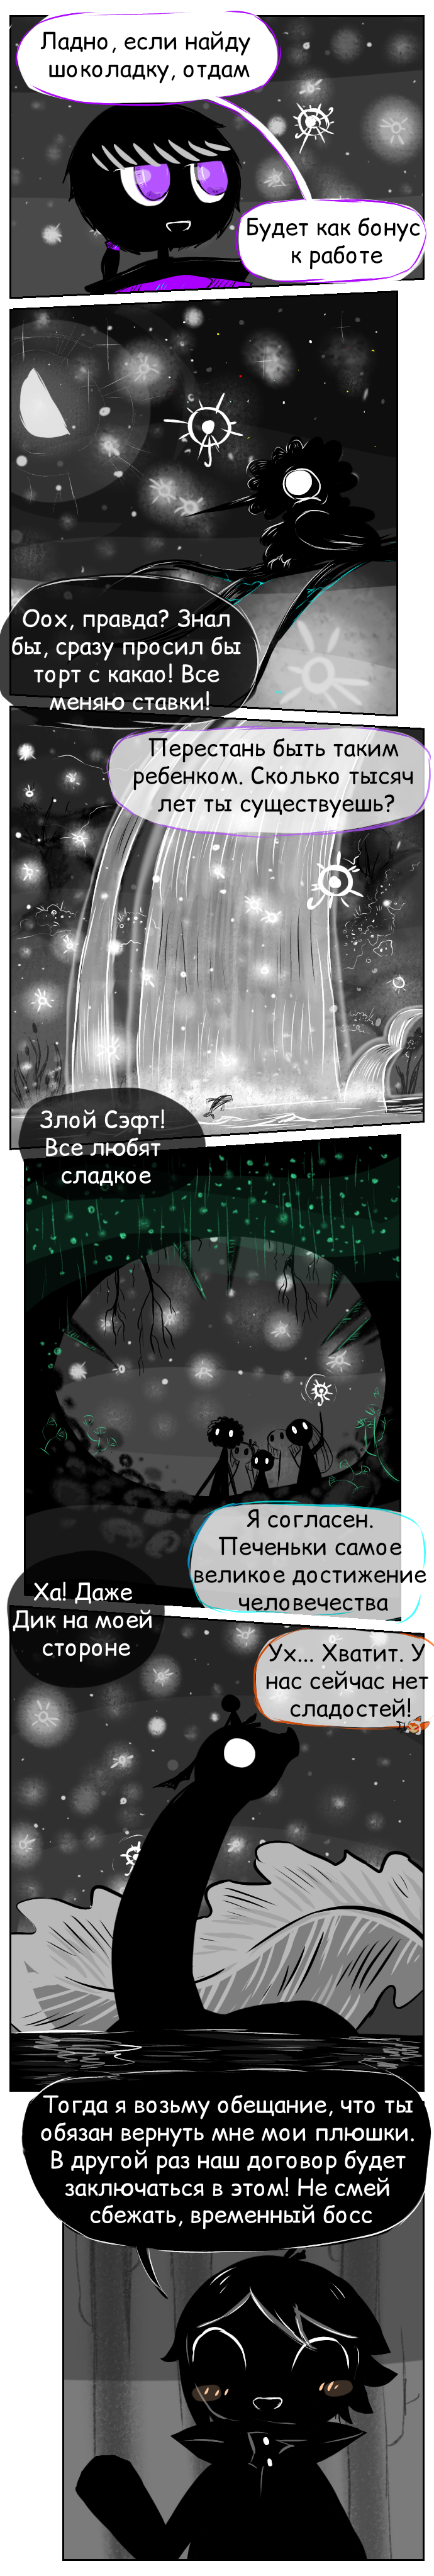 Комикс Туманный лес || Fog Forest: выпуск №65